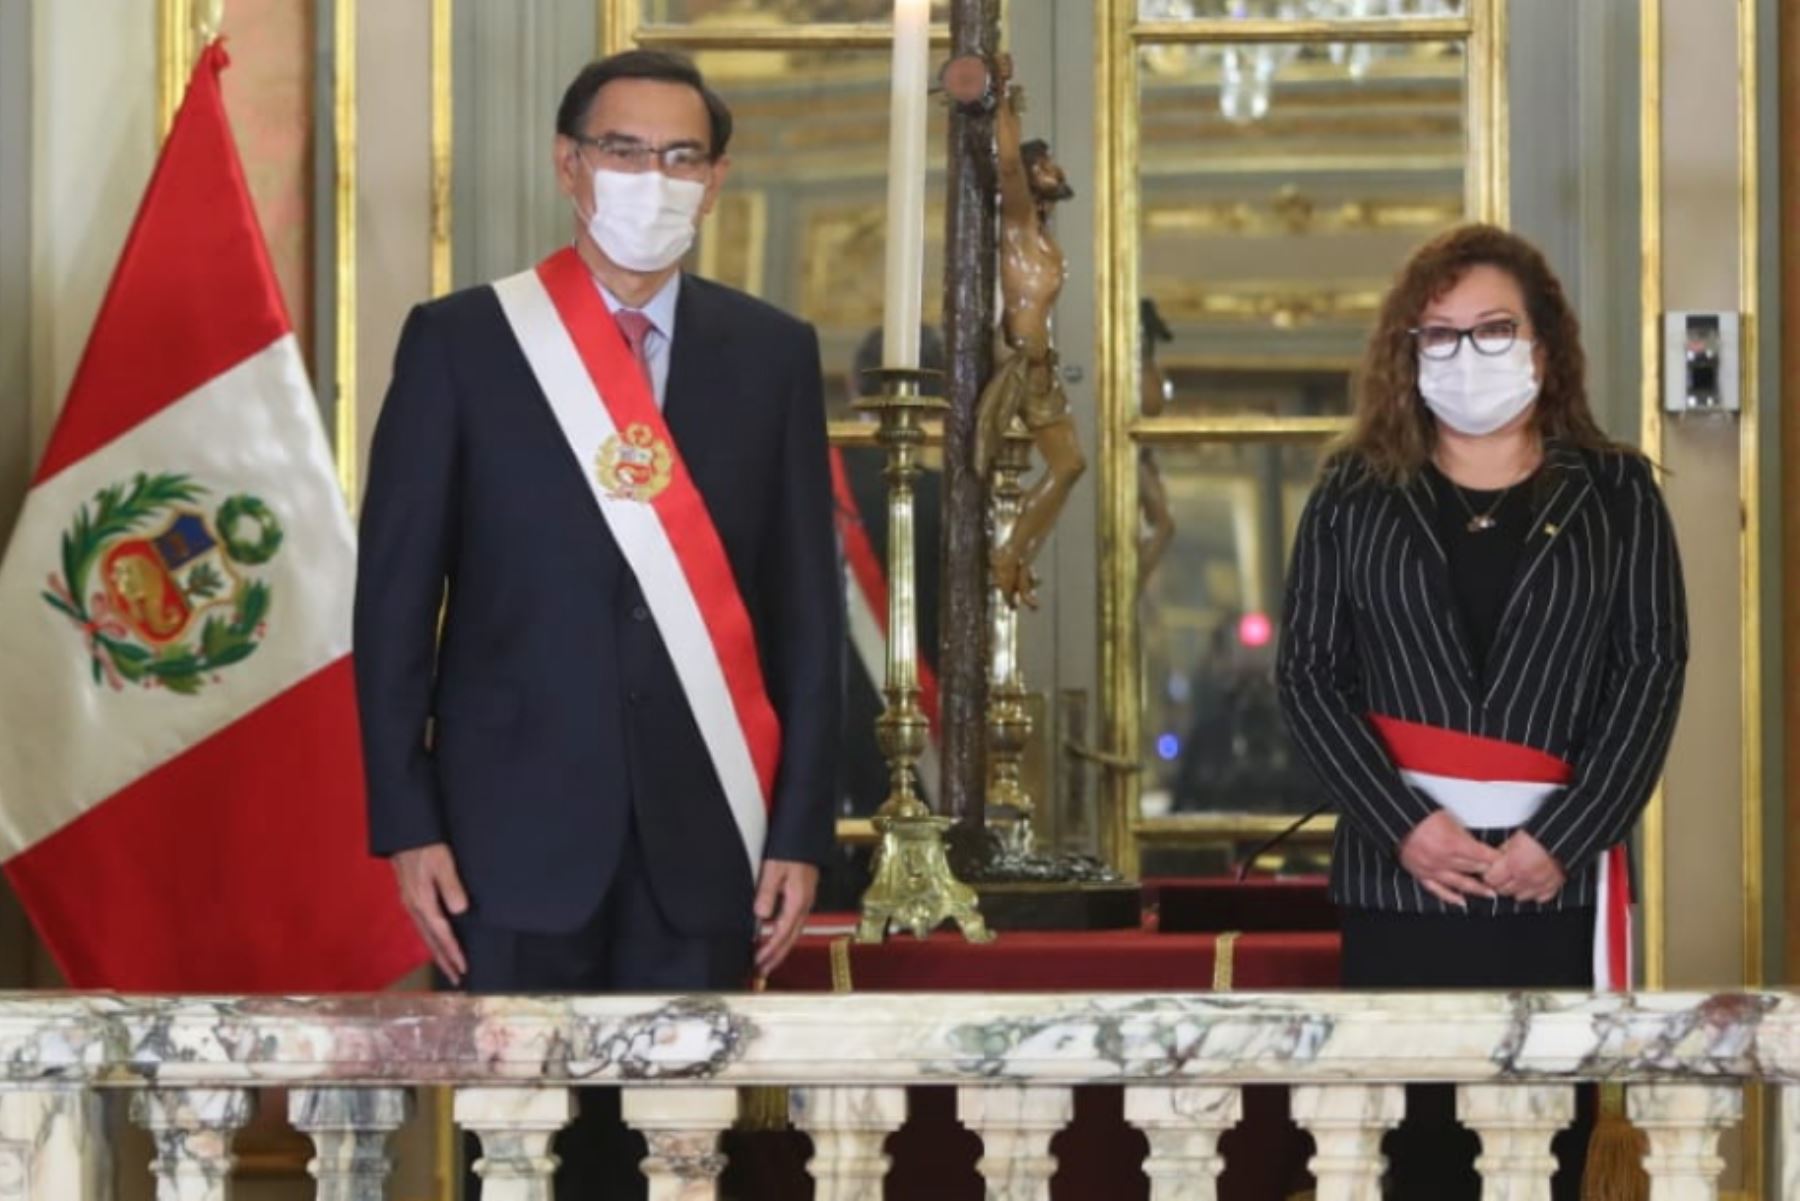 El presidente de la República, Martín Vizcarra, toma juramento a Kirla Echegaray como ministra de Ambiente.

Foto: ANDINA/ Prensa Presidencia